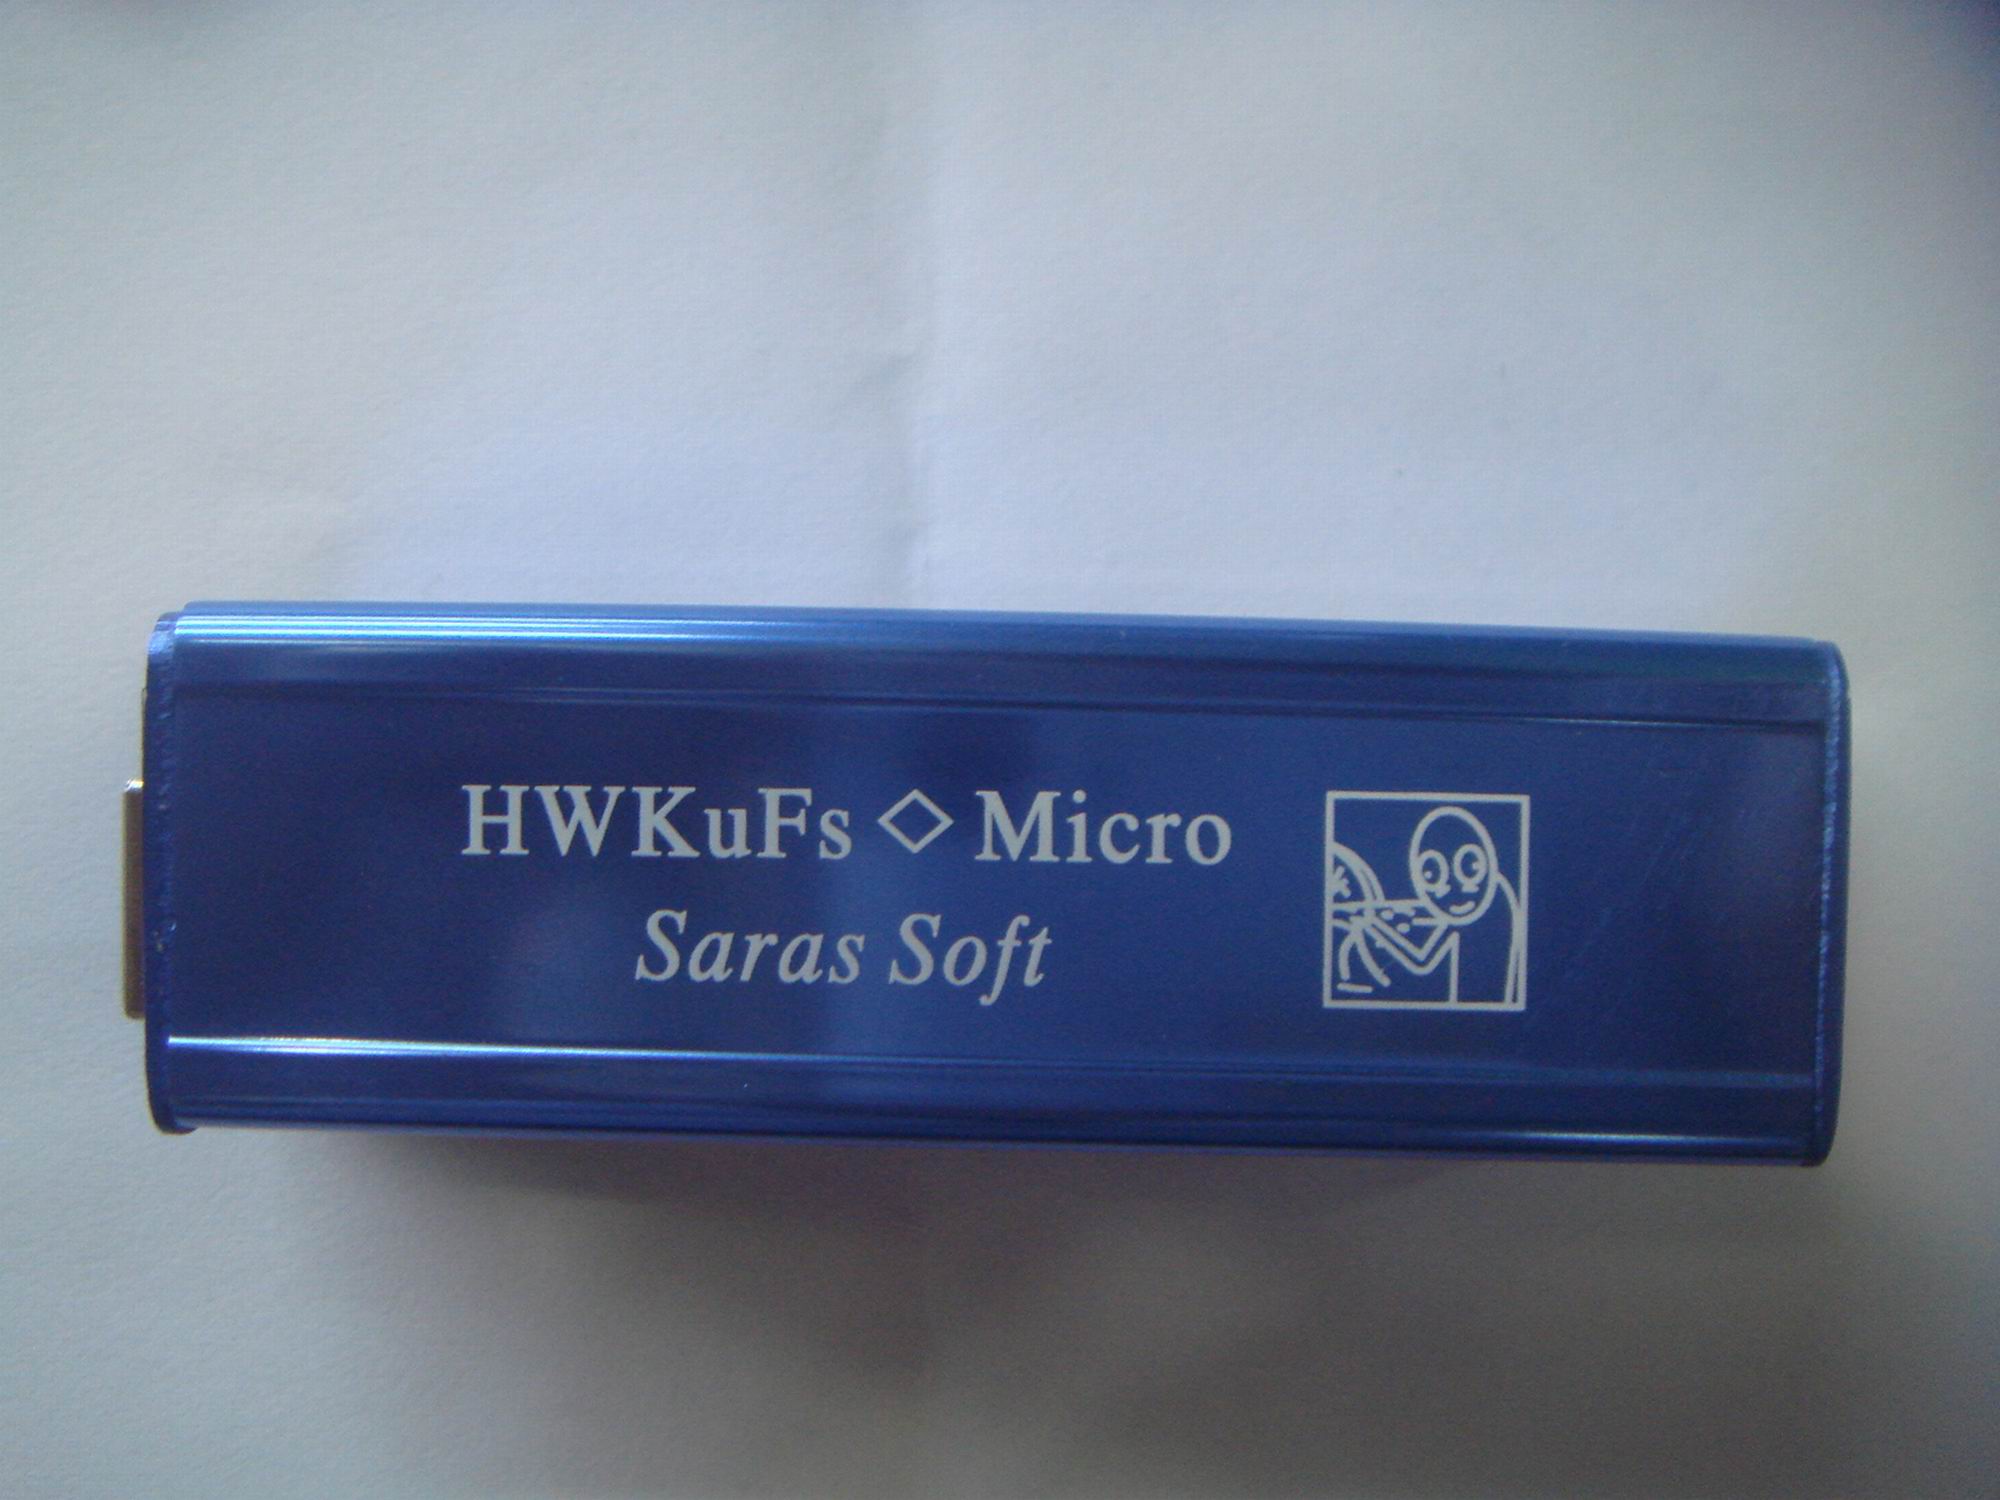   HWK-uFs Micro   